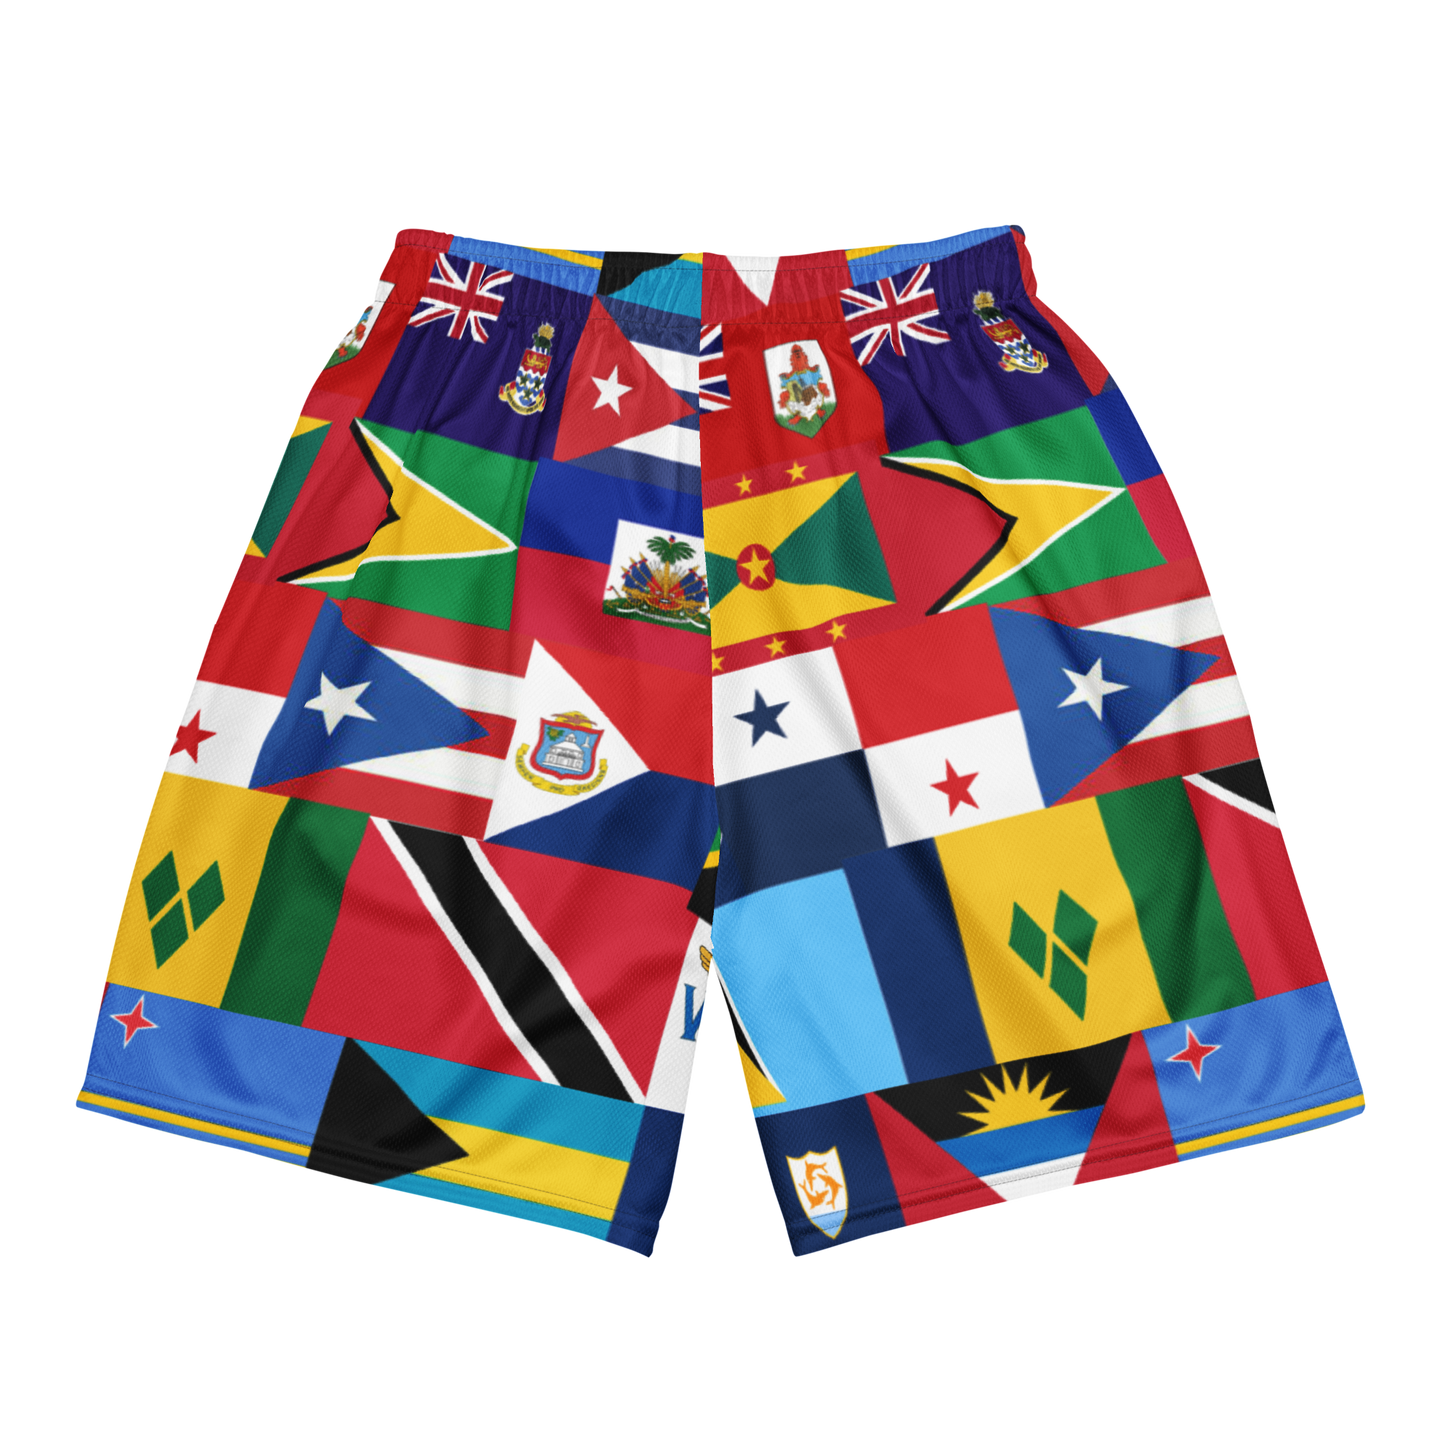 West Indian Flag Unisex mesh shorts